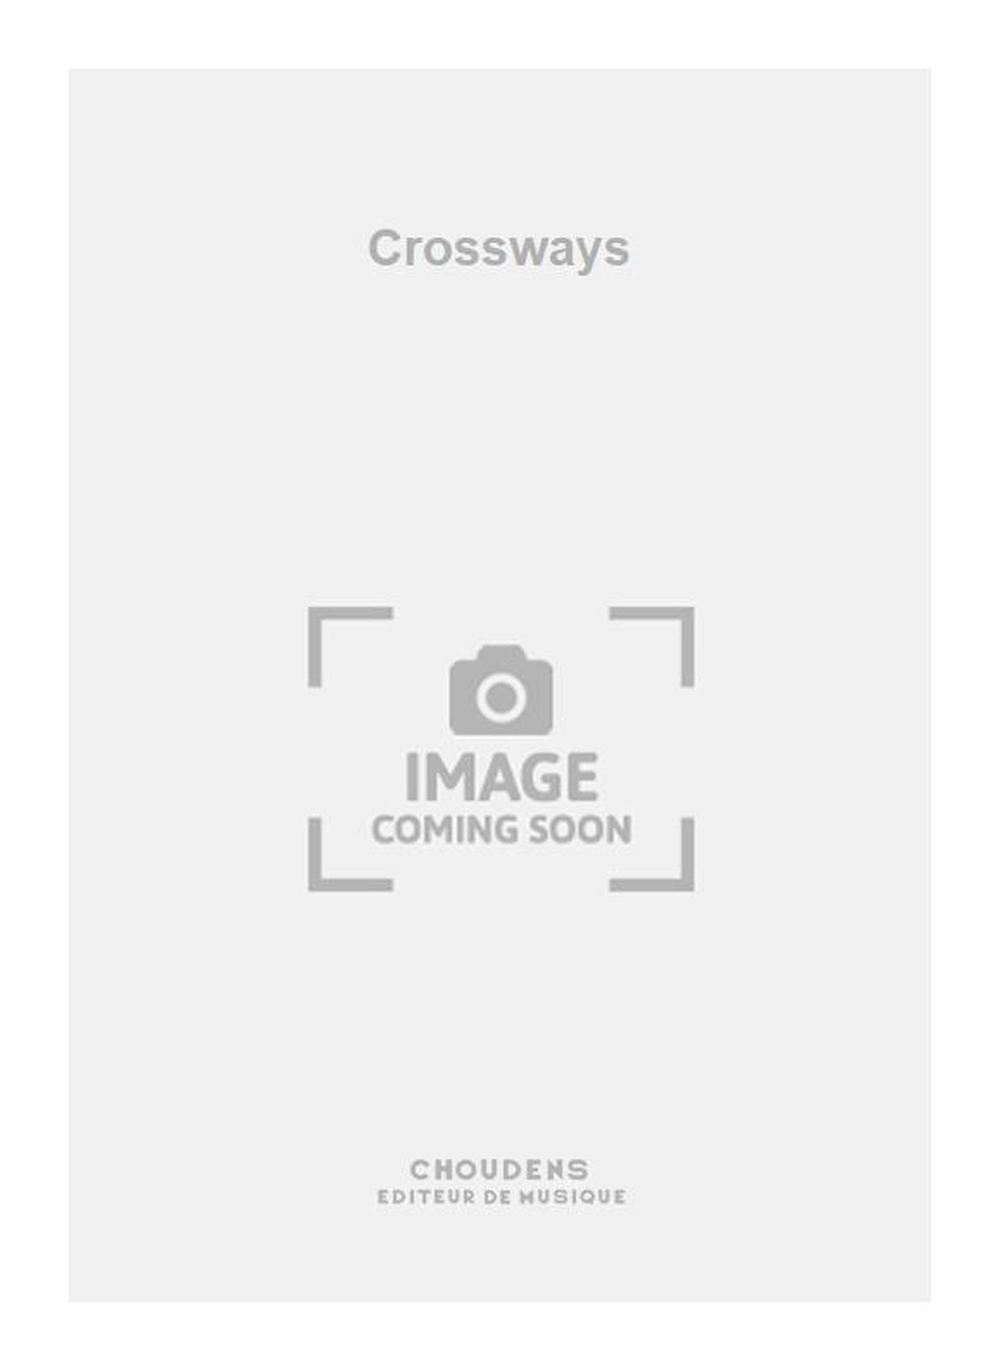 Prodromids: Crossways